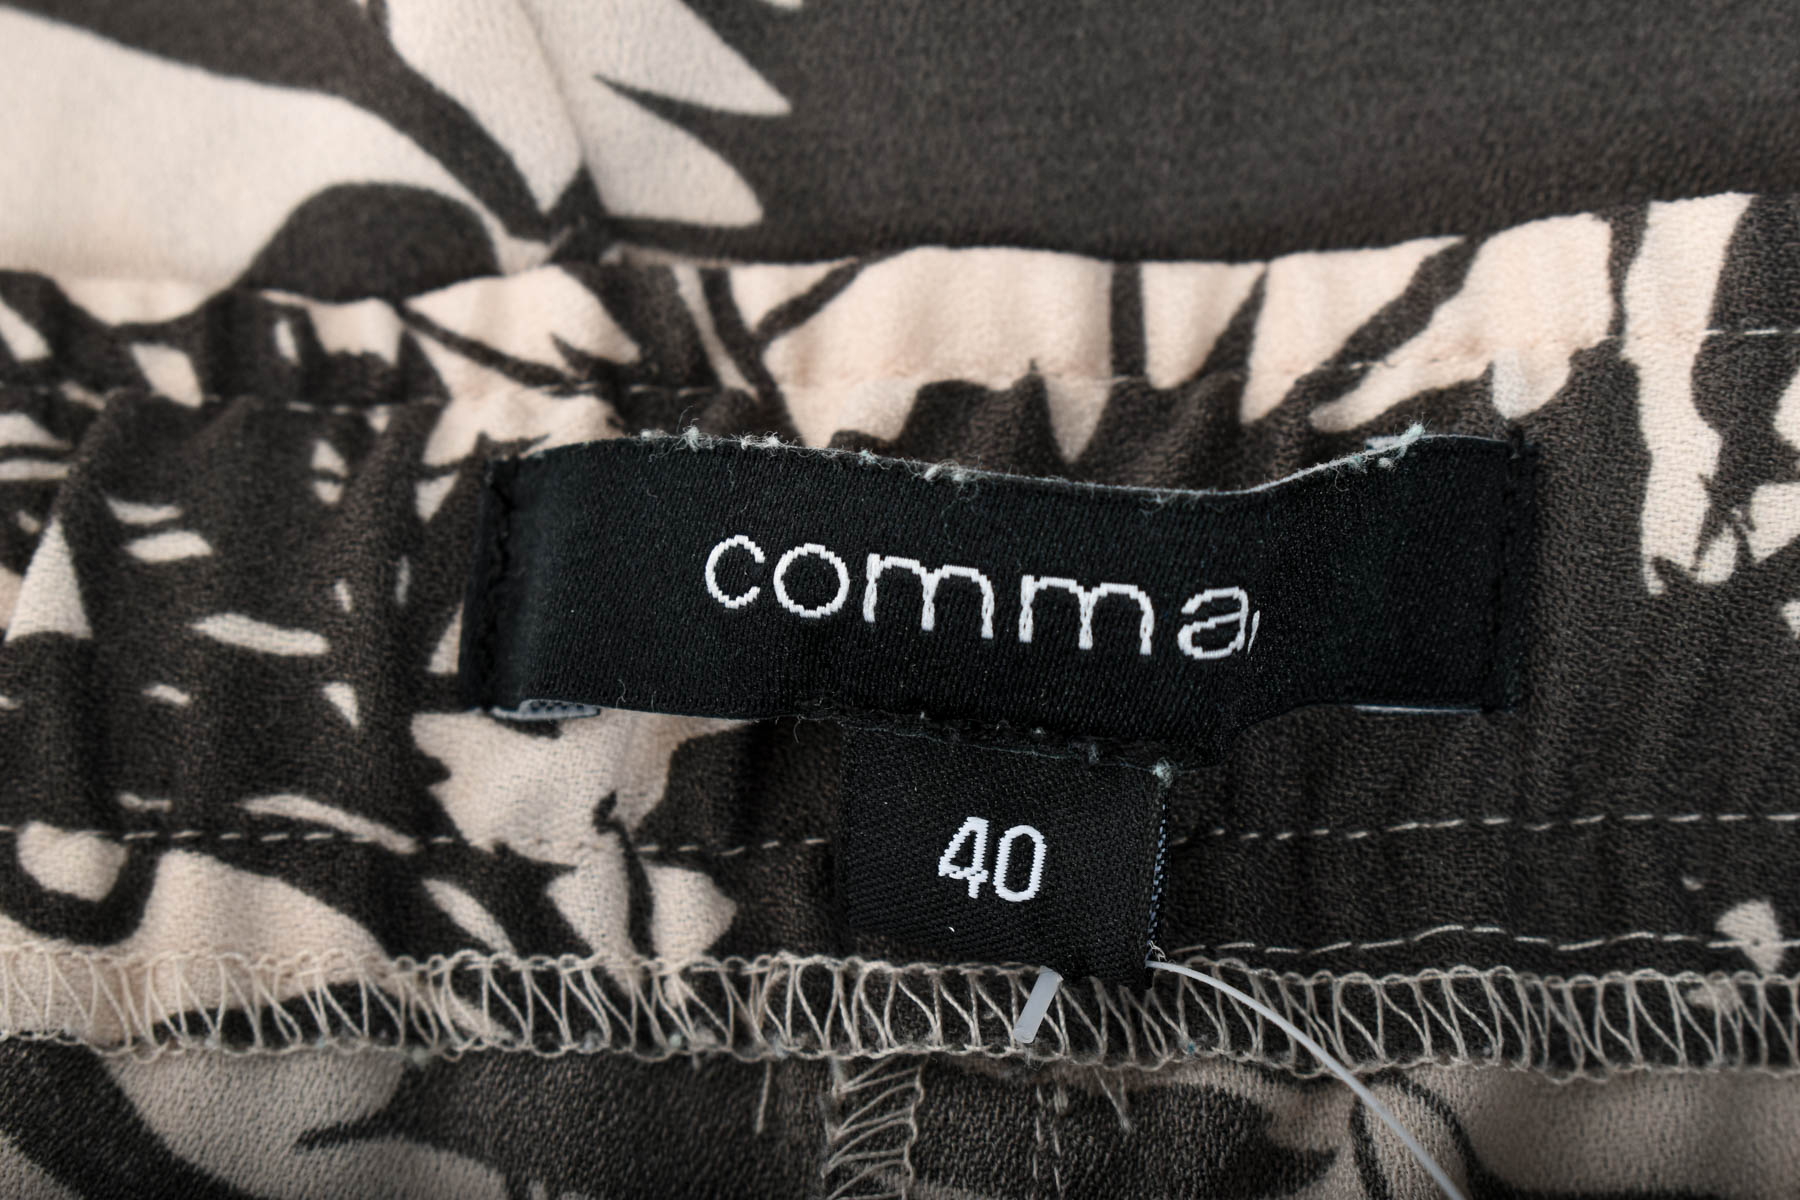 Γυναικεία παντελόνια - Comma, - 2